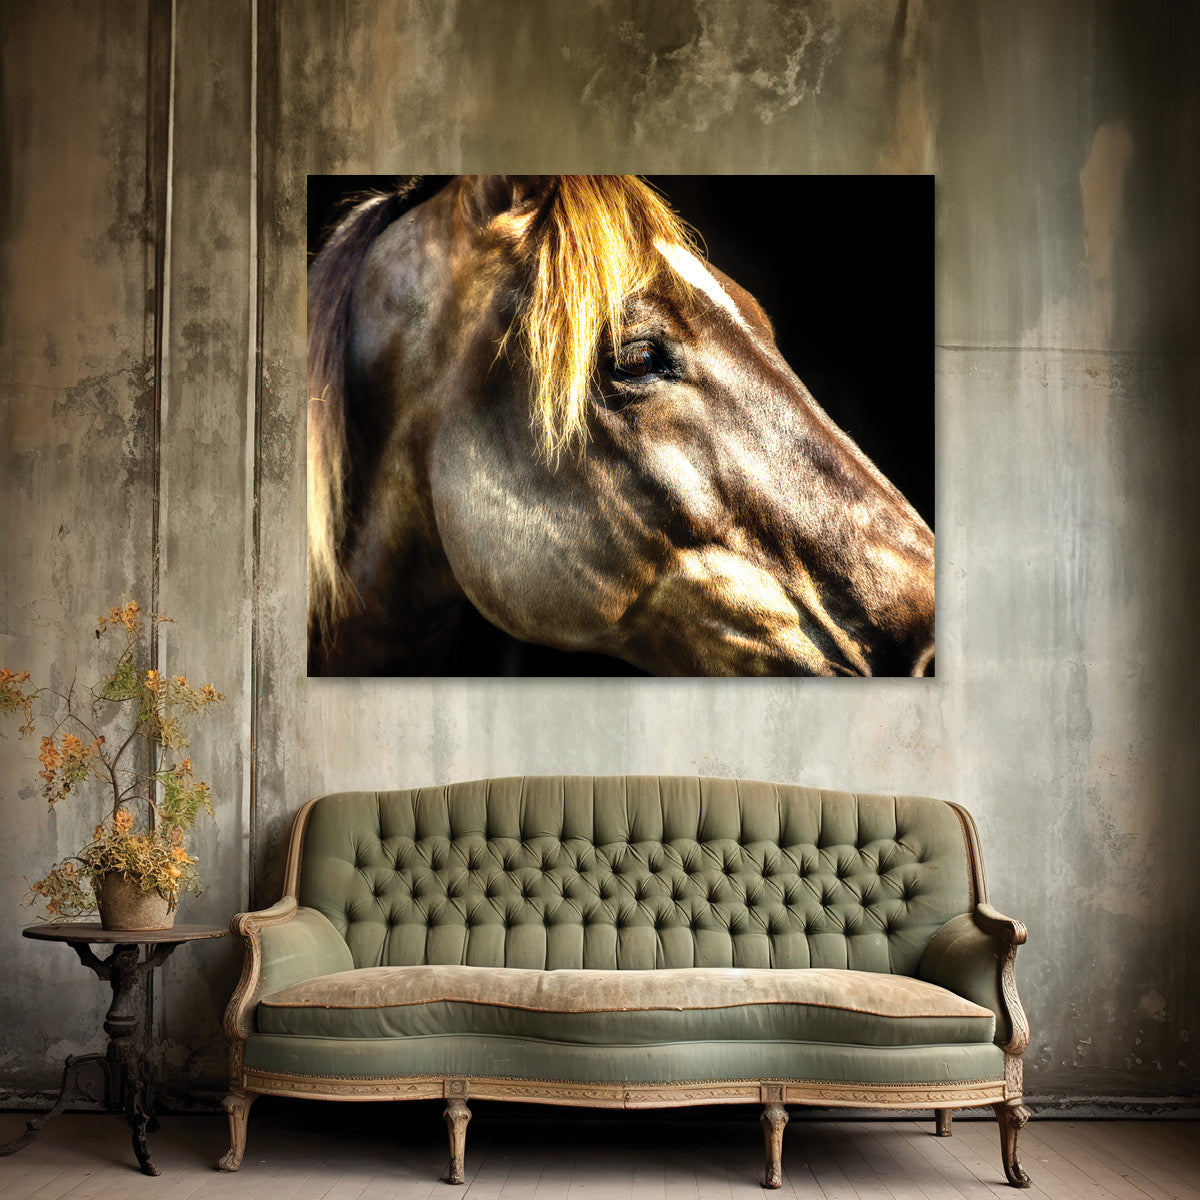 horses wall decor